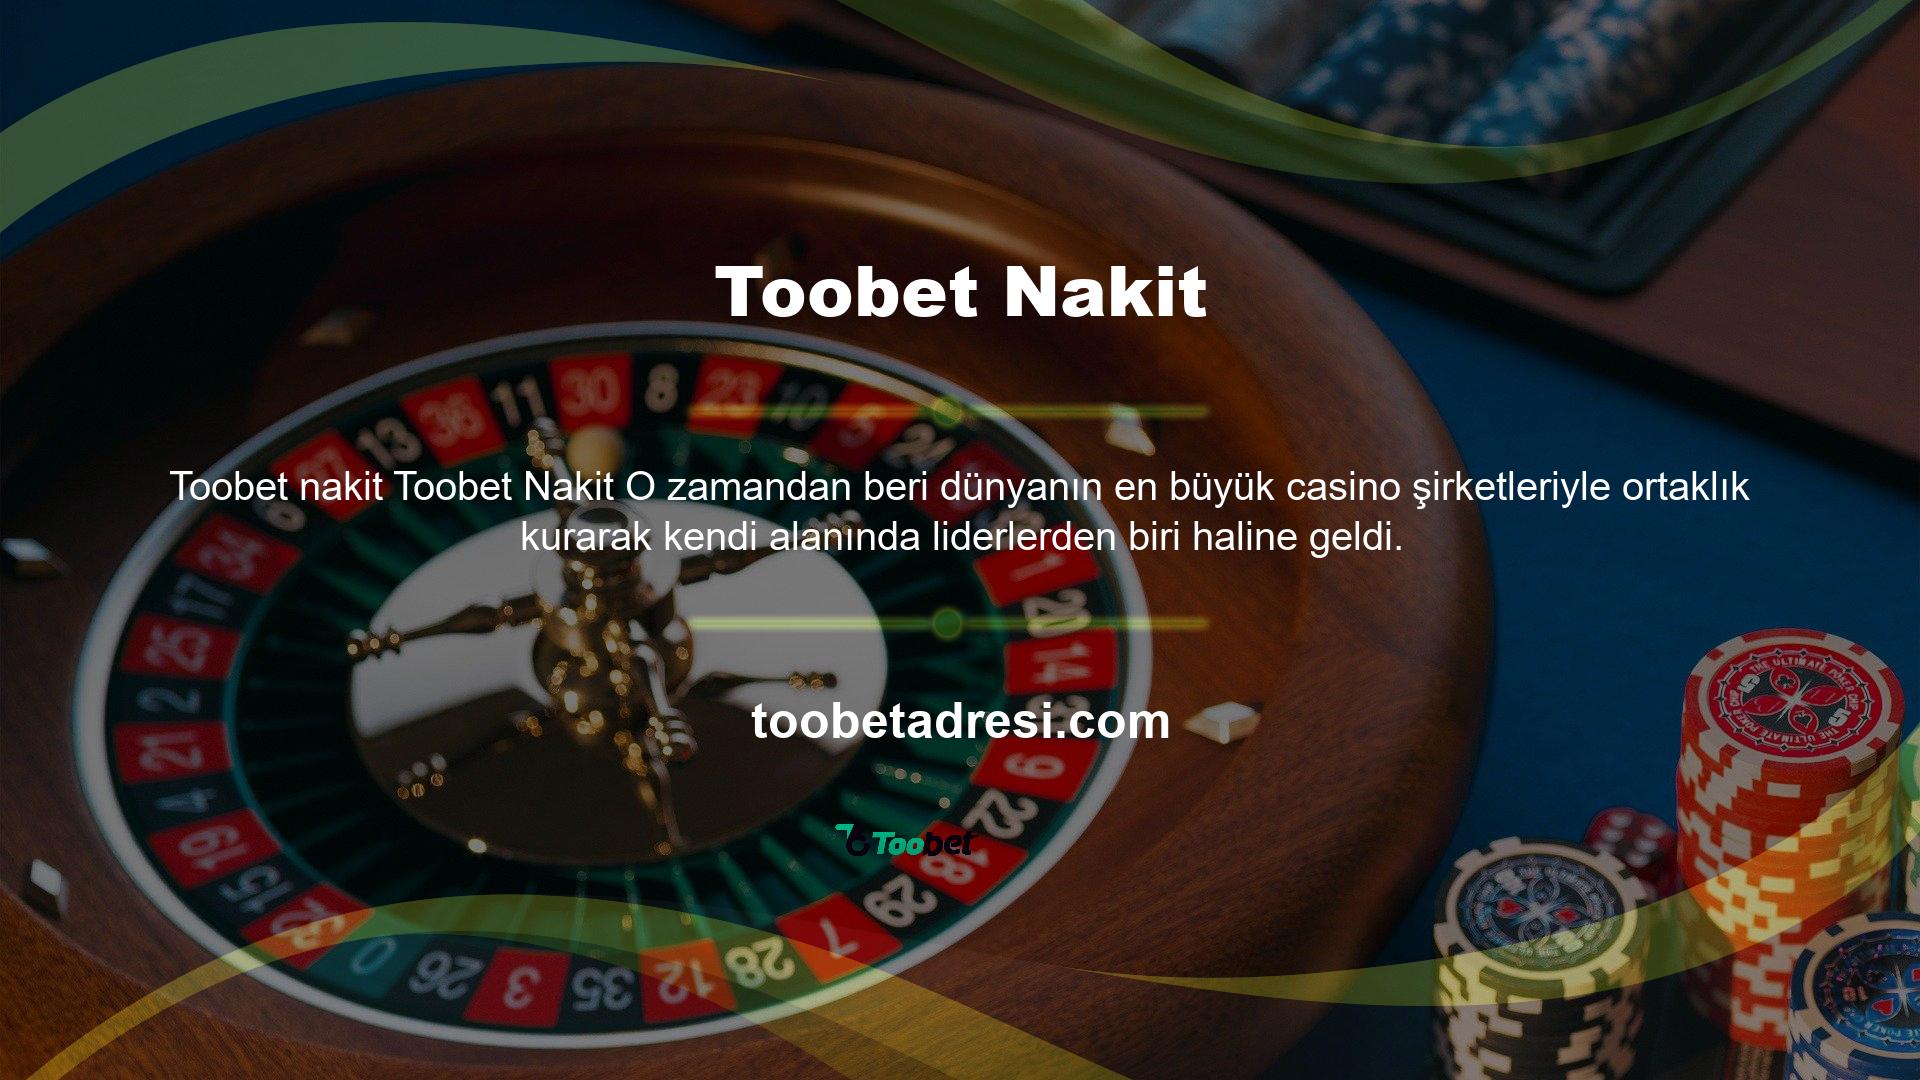 Toobet canlı casino masaları, kullanıcılara Casino oynama ve eğlenme fırsatı vermek için farklı Casino kategorilerinden klasik ve yeni nesil casino sunmaktadır